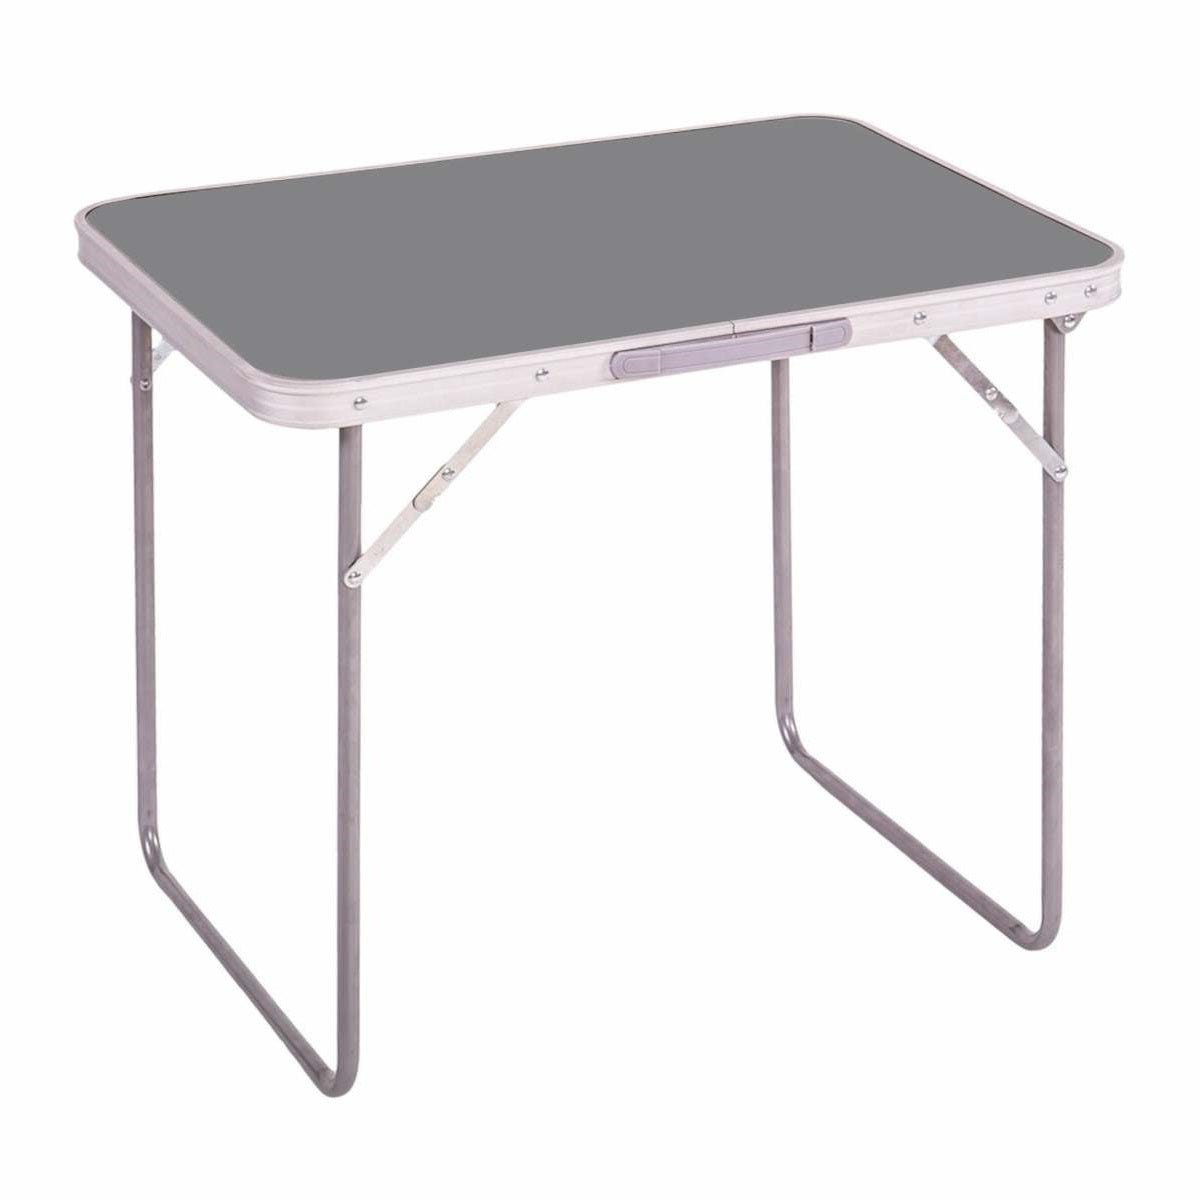 Petite table pliante d'extérieur en métal pour camping barbecue pique-nique